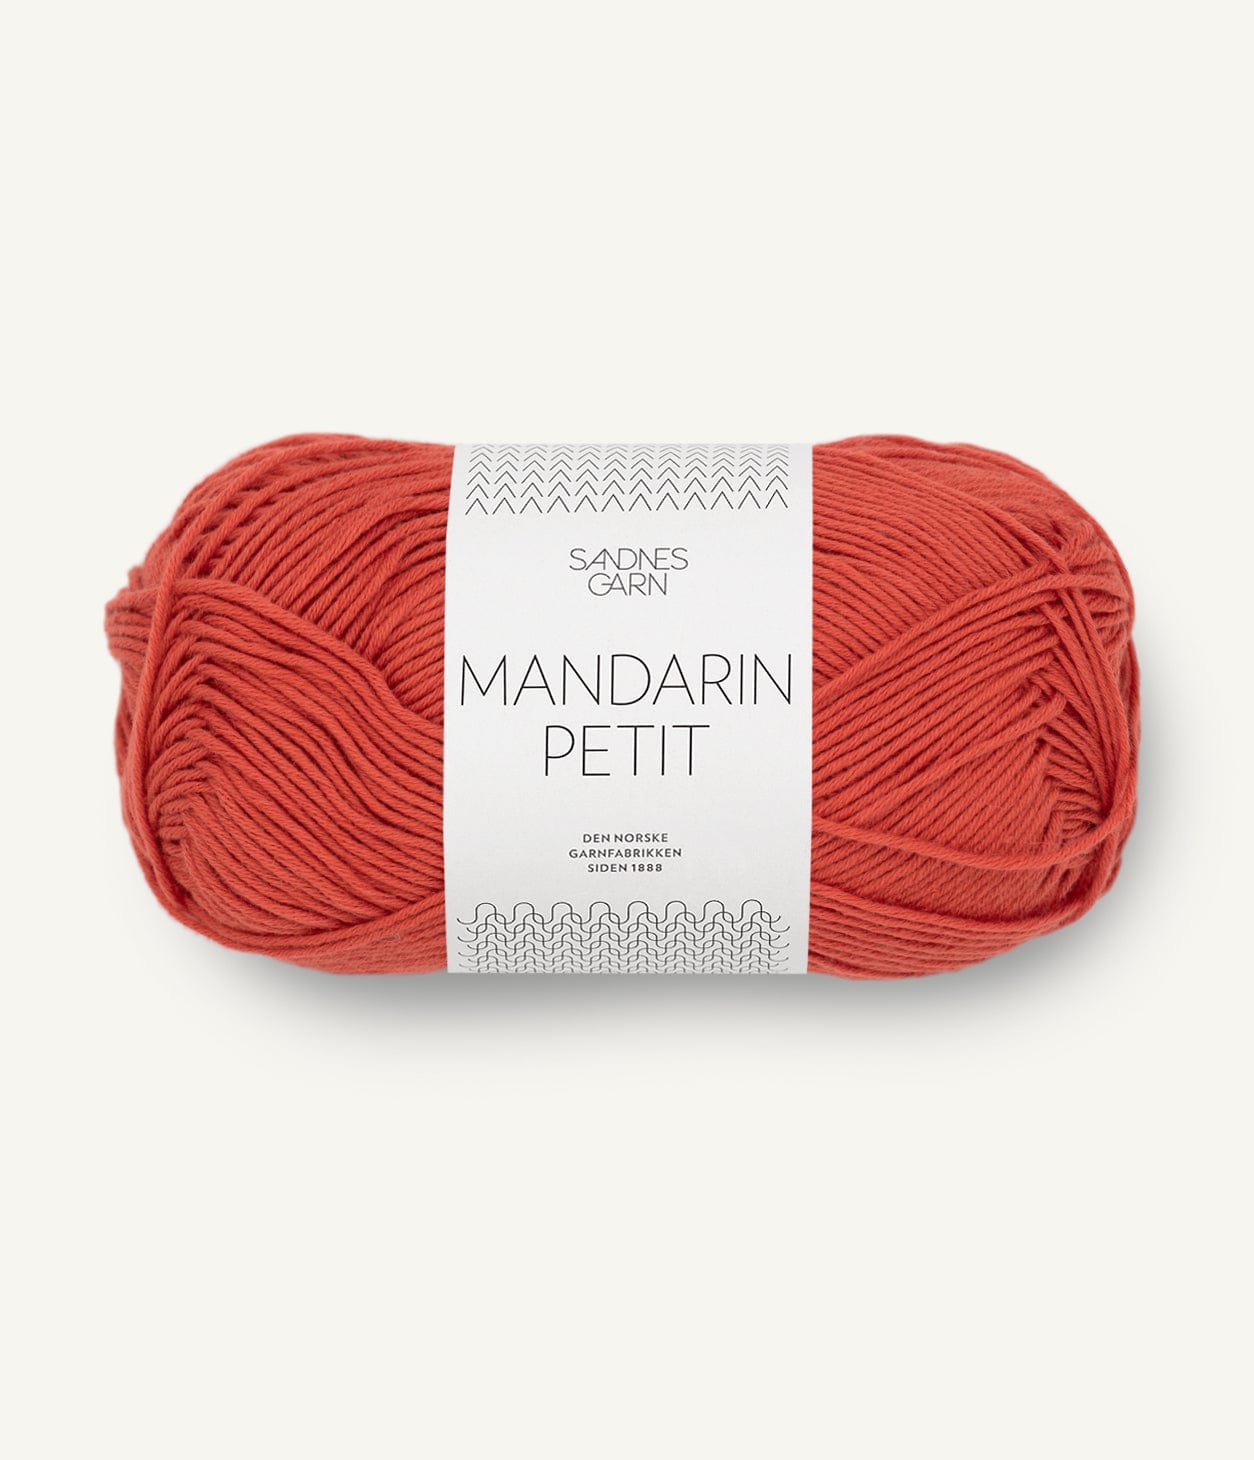 MANDARIN PETIT von SANDNES jetzt online kaufen bei OONIQUE